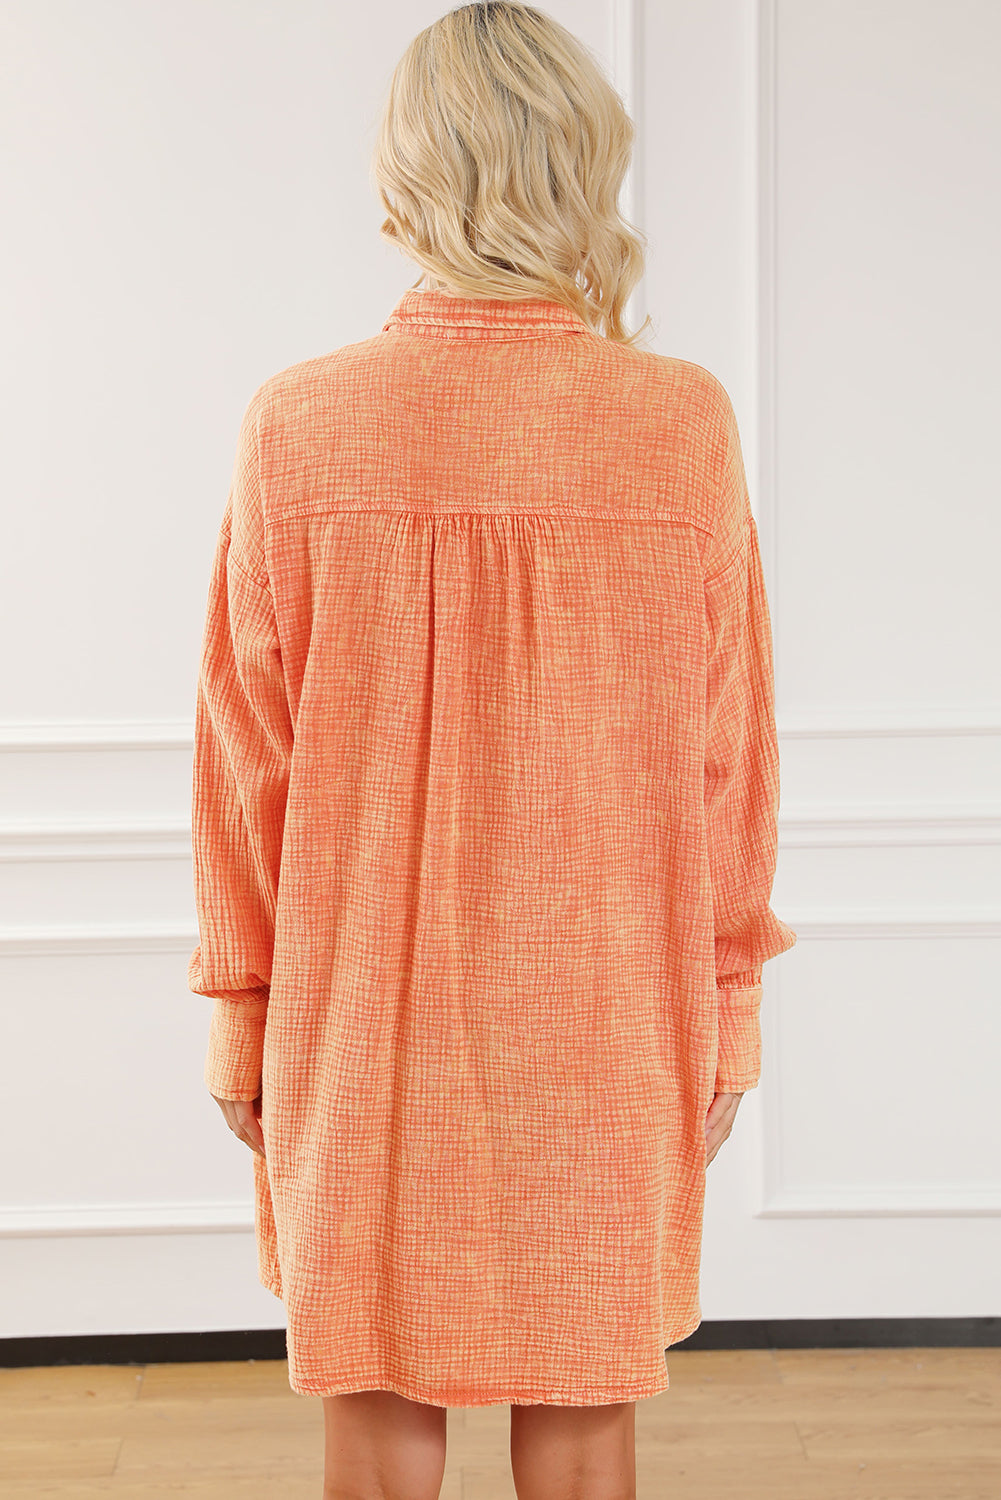 Orangefarbenes, übergroßes Hemdkleid mit zwei Brusttaschen in Knitteroptik